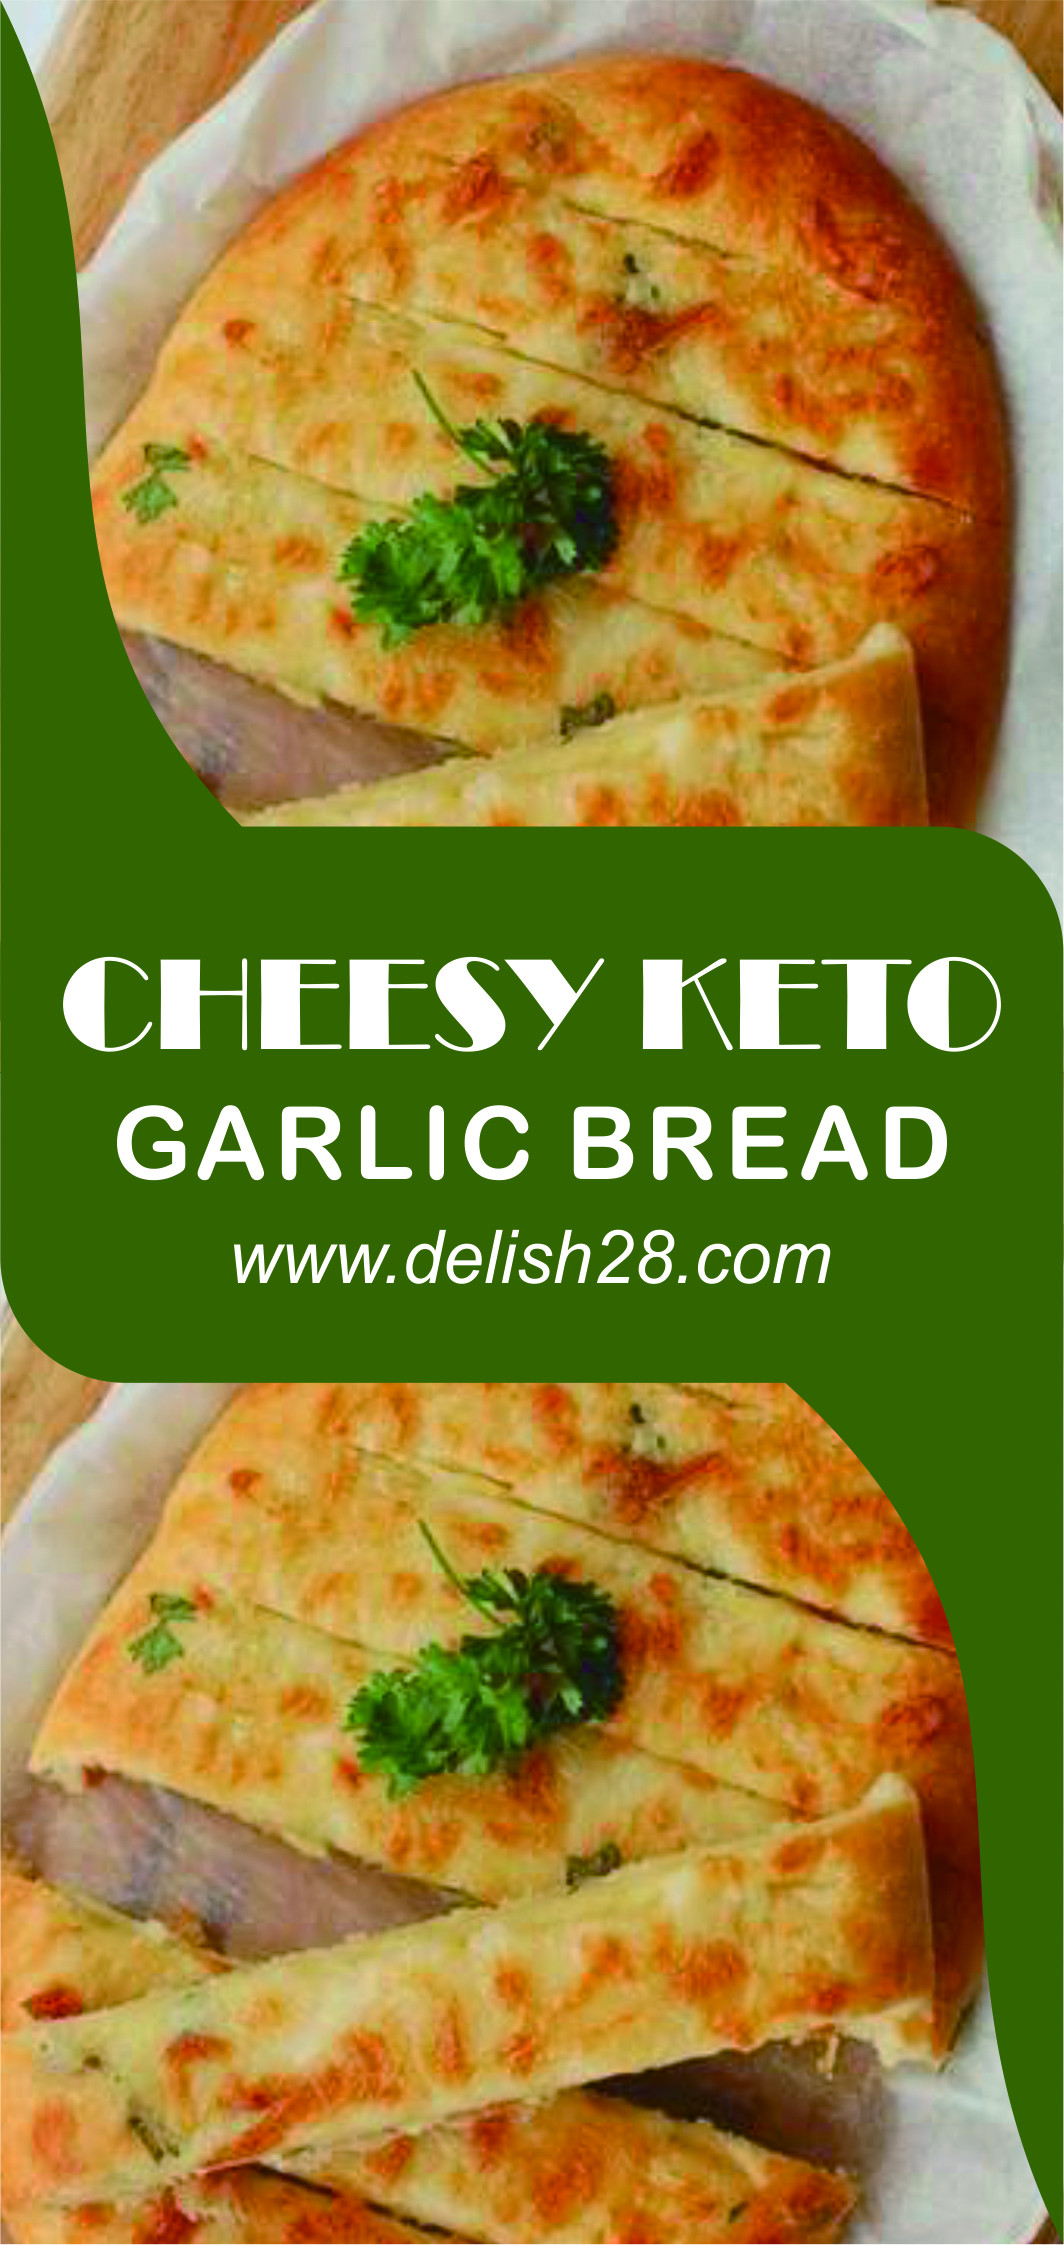 Delish Keto Garlic Bread
 CHEESY KETO GARLIC BREAD delish28